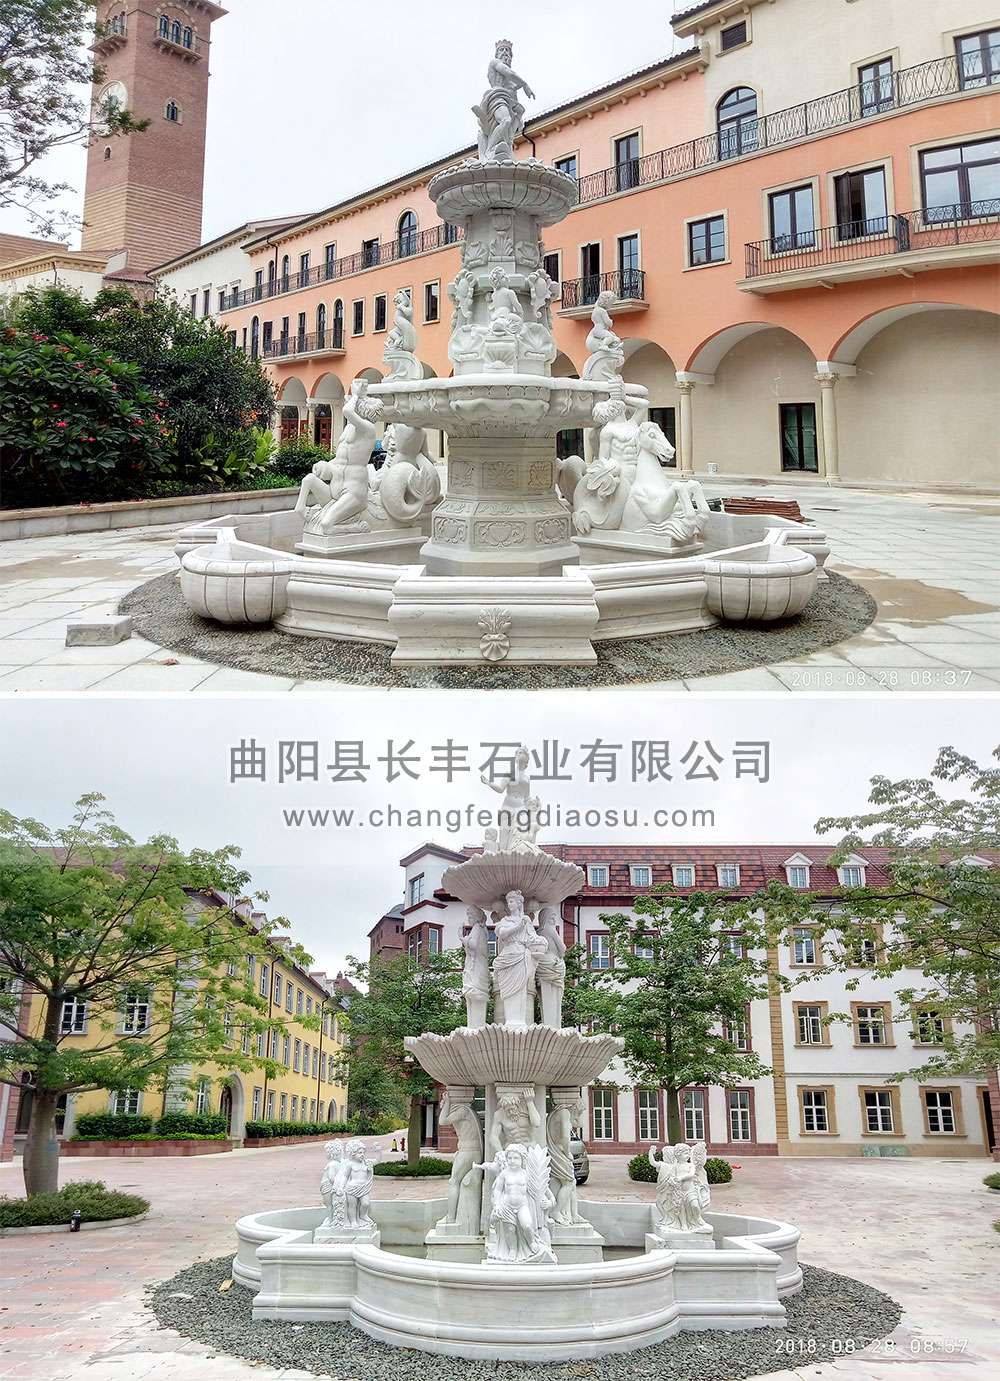 13-14-华为苏州研发中心-喷泉水景雕塑-2018年-1002.jpg